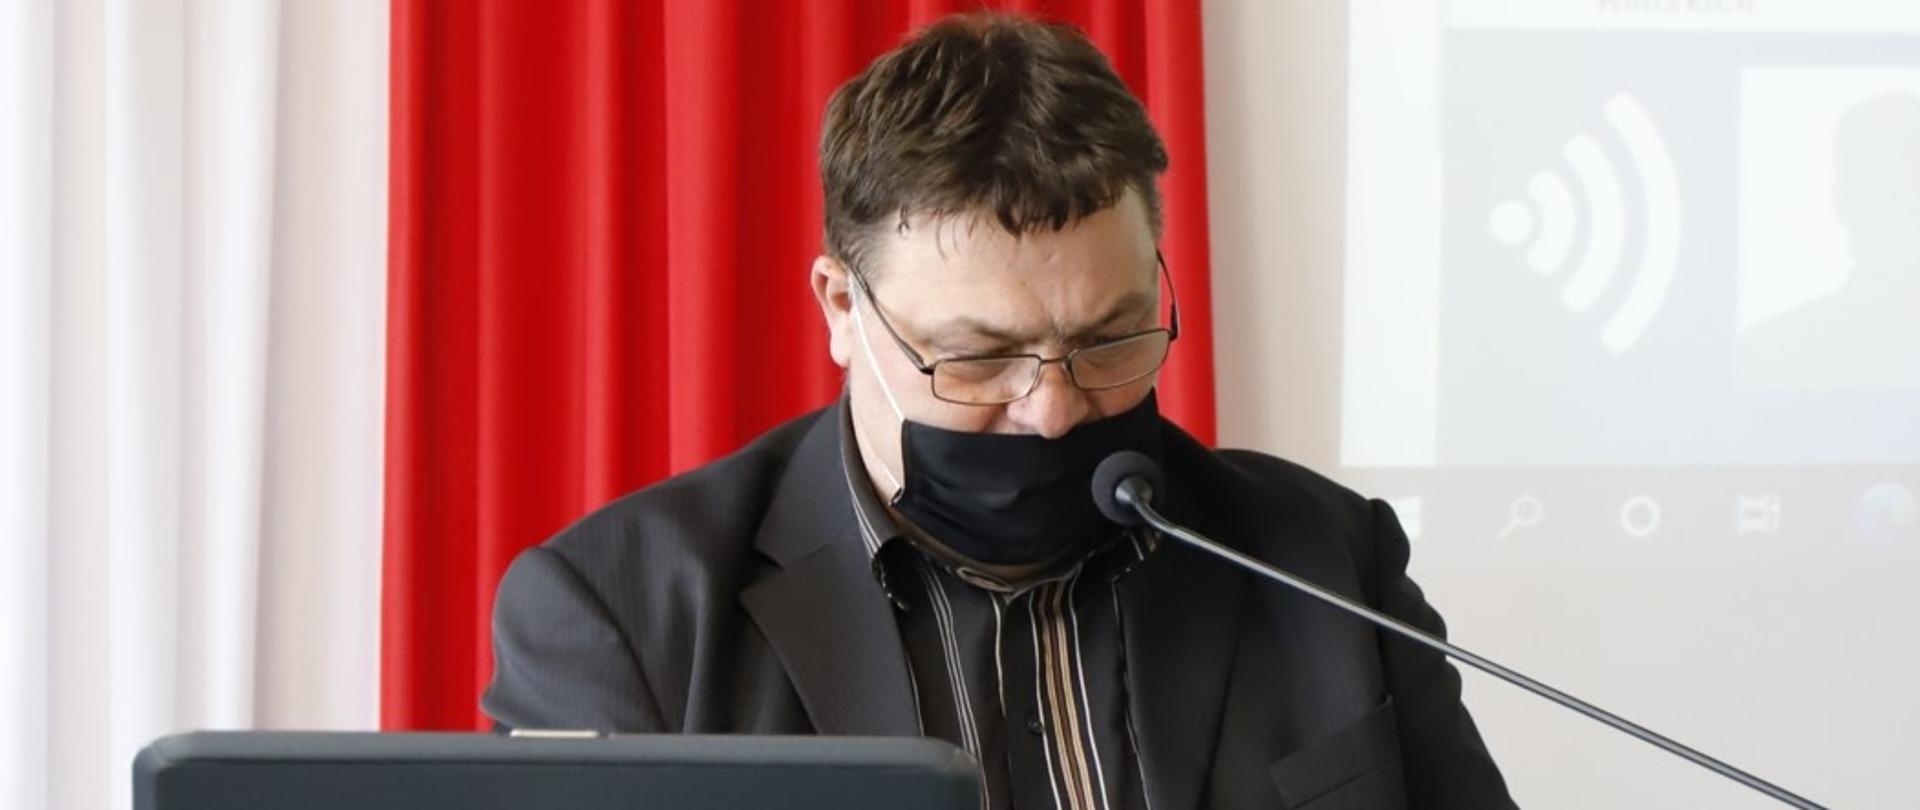 Przewodniczący rady powiatu Zbigniew Kowalczyk